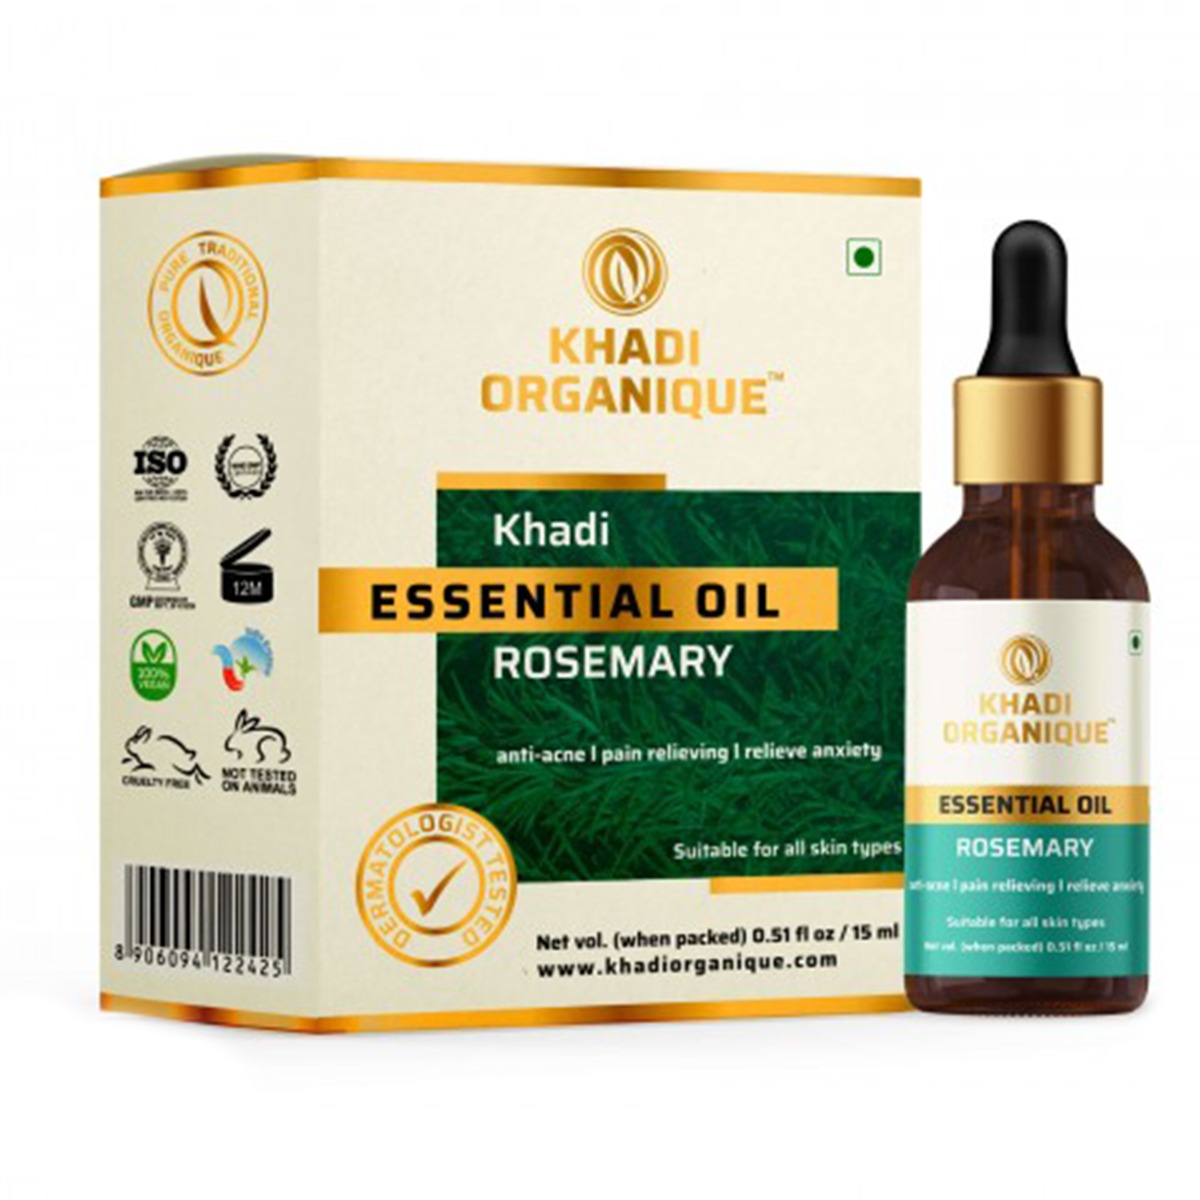 Khadi Organique Rosemary Essential Oil, 15ml